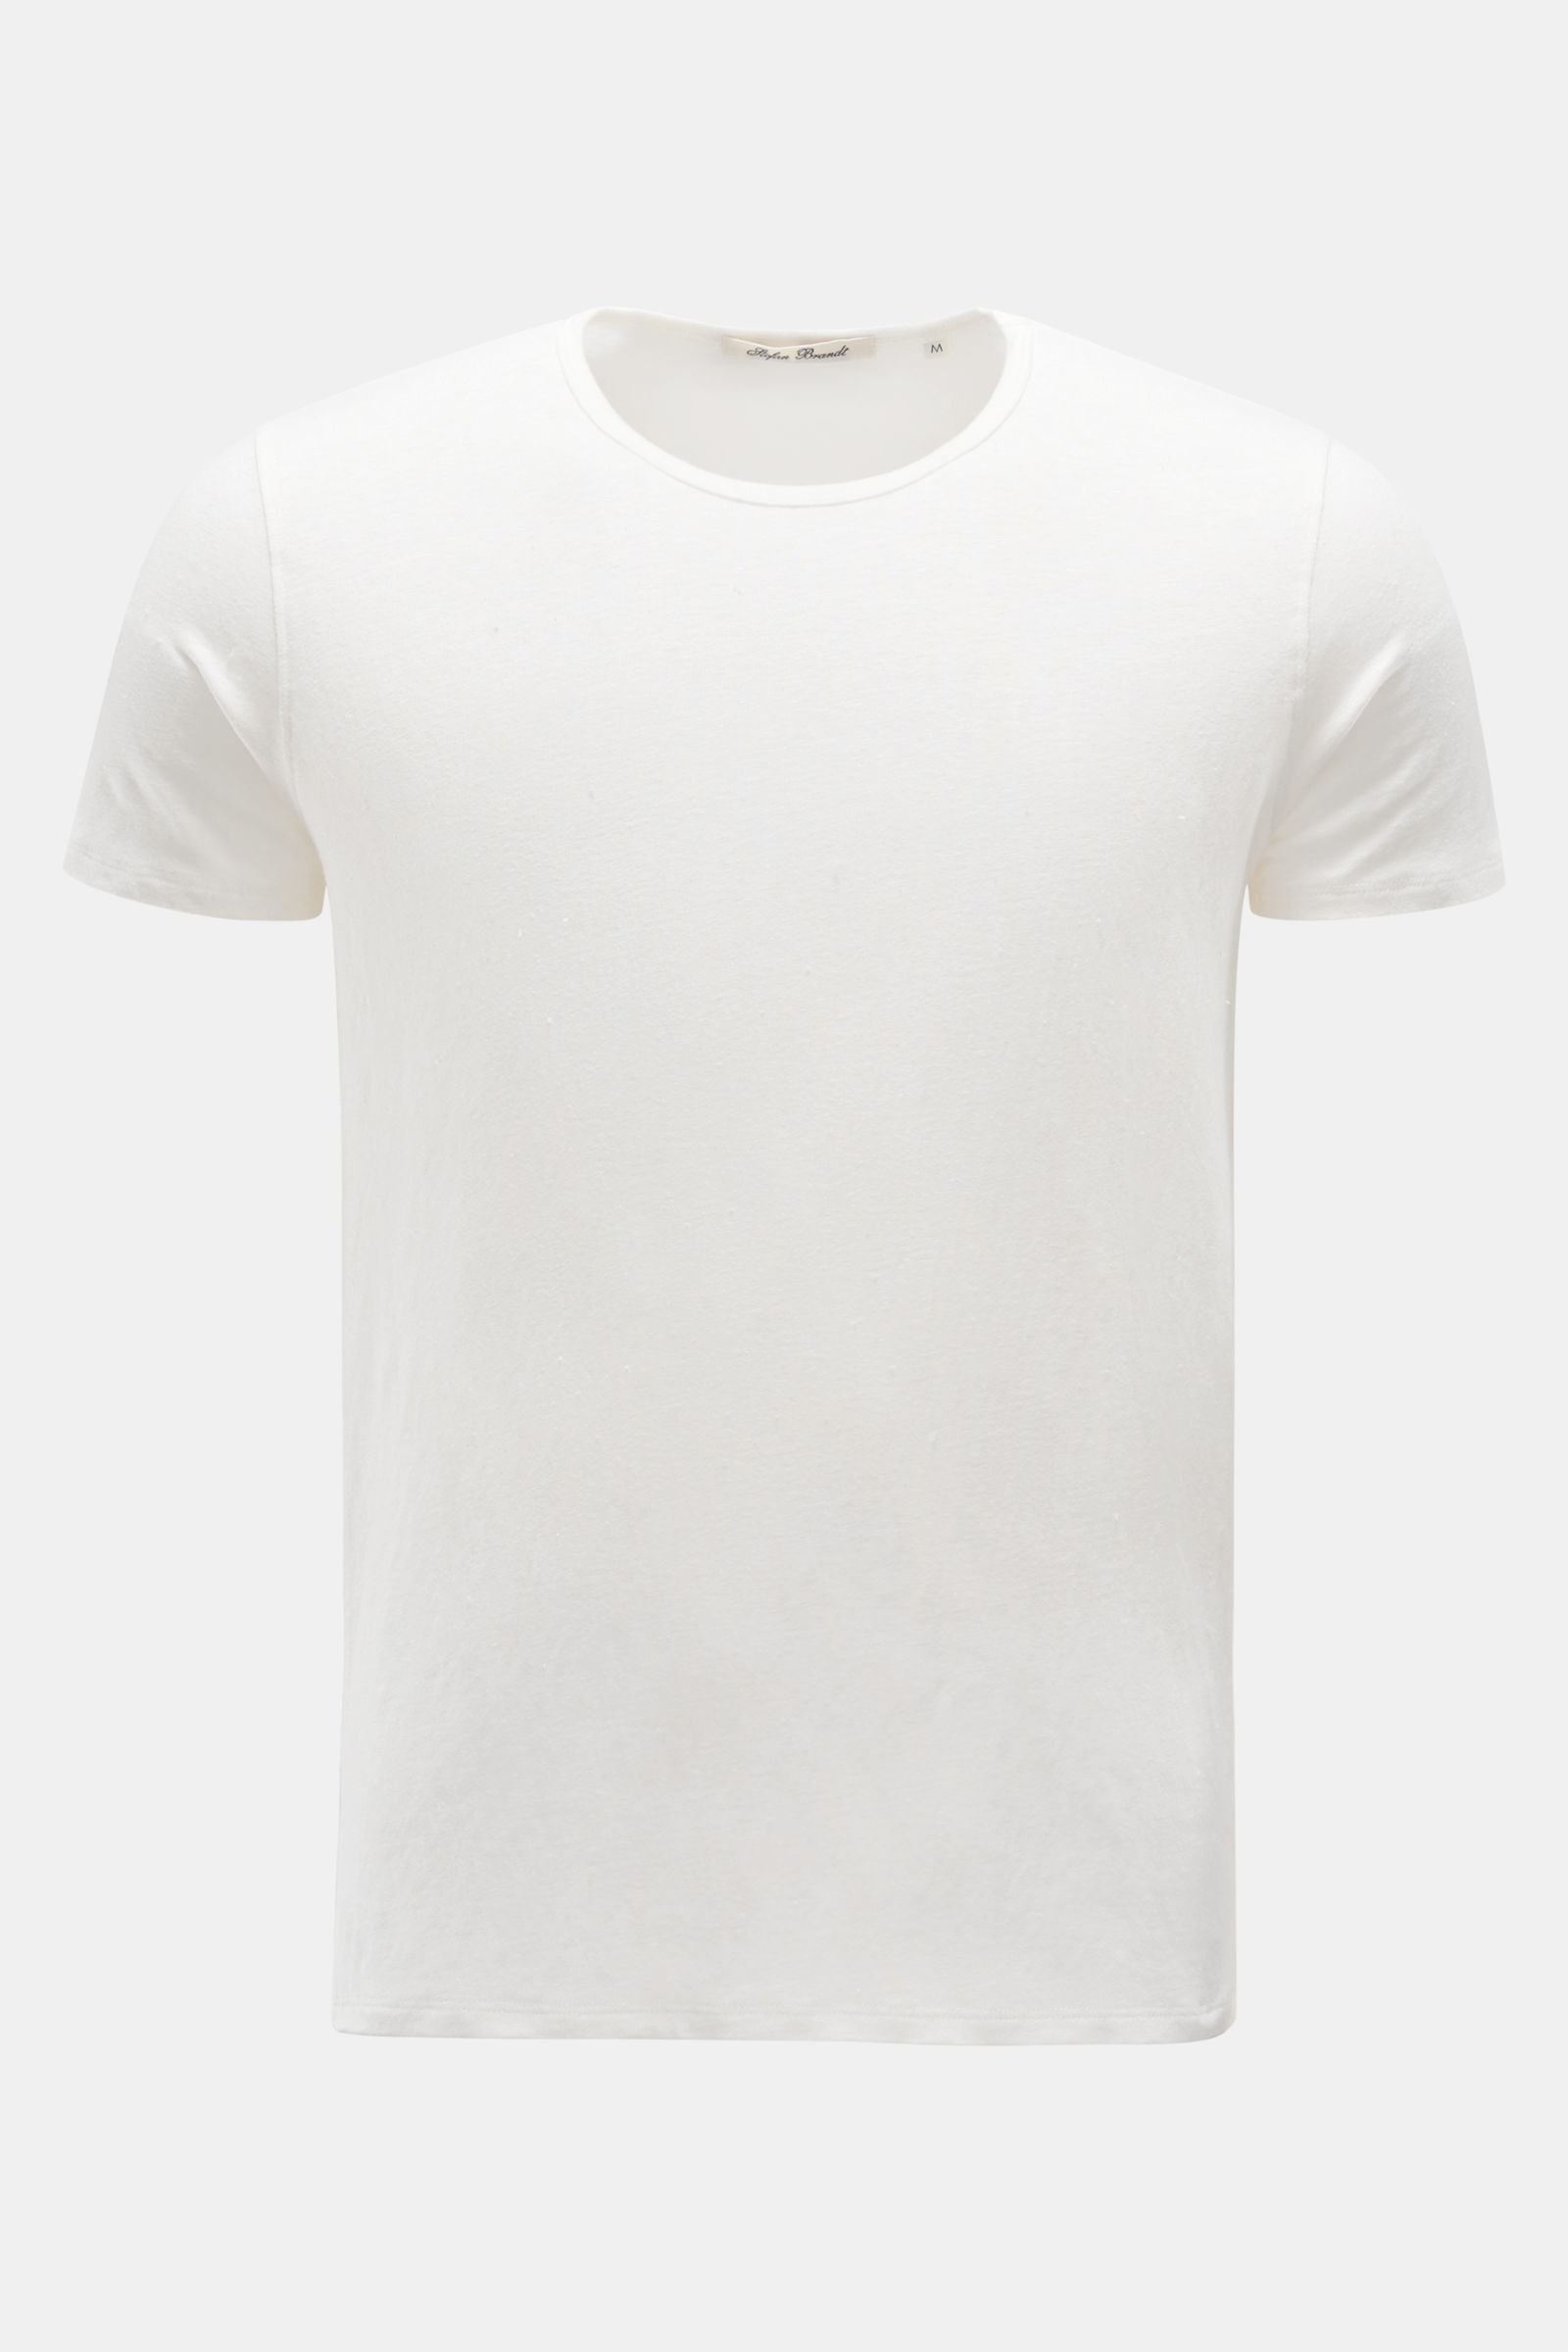 Leinen Rundhals-T-Shirt offwhite